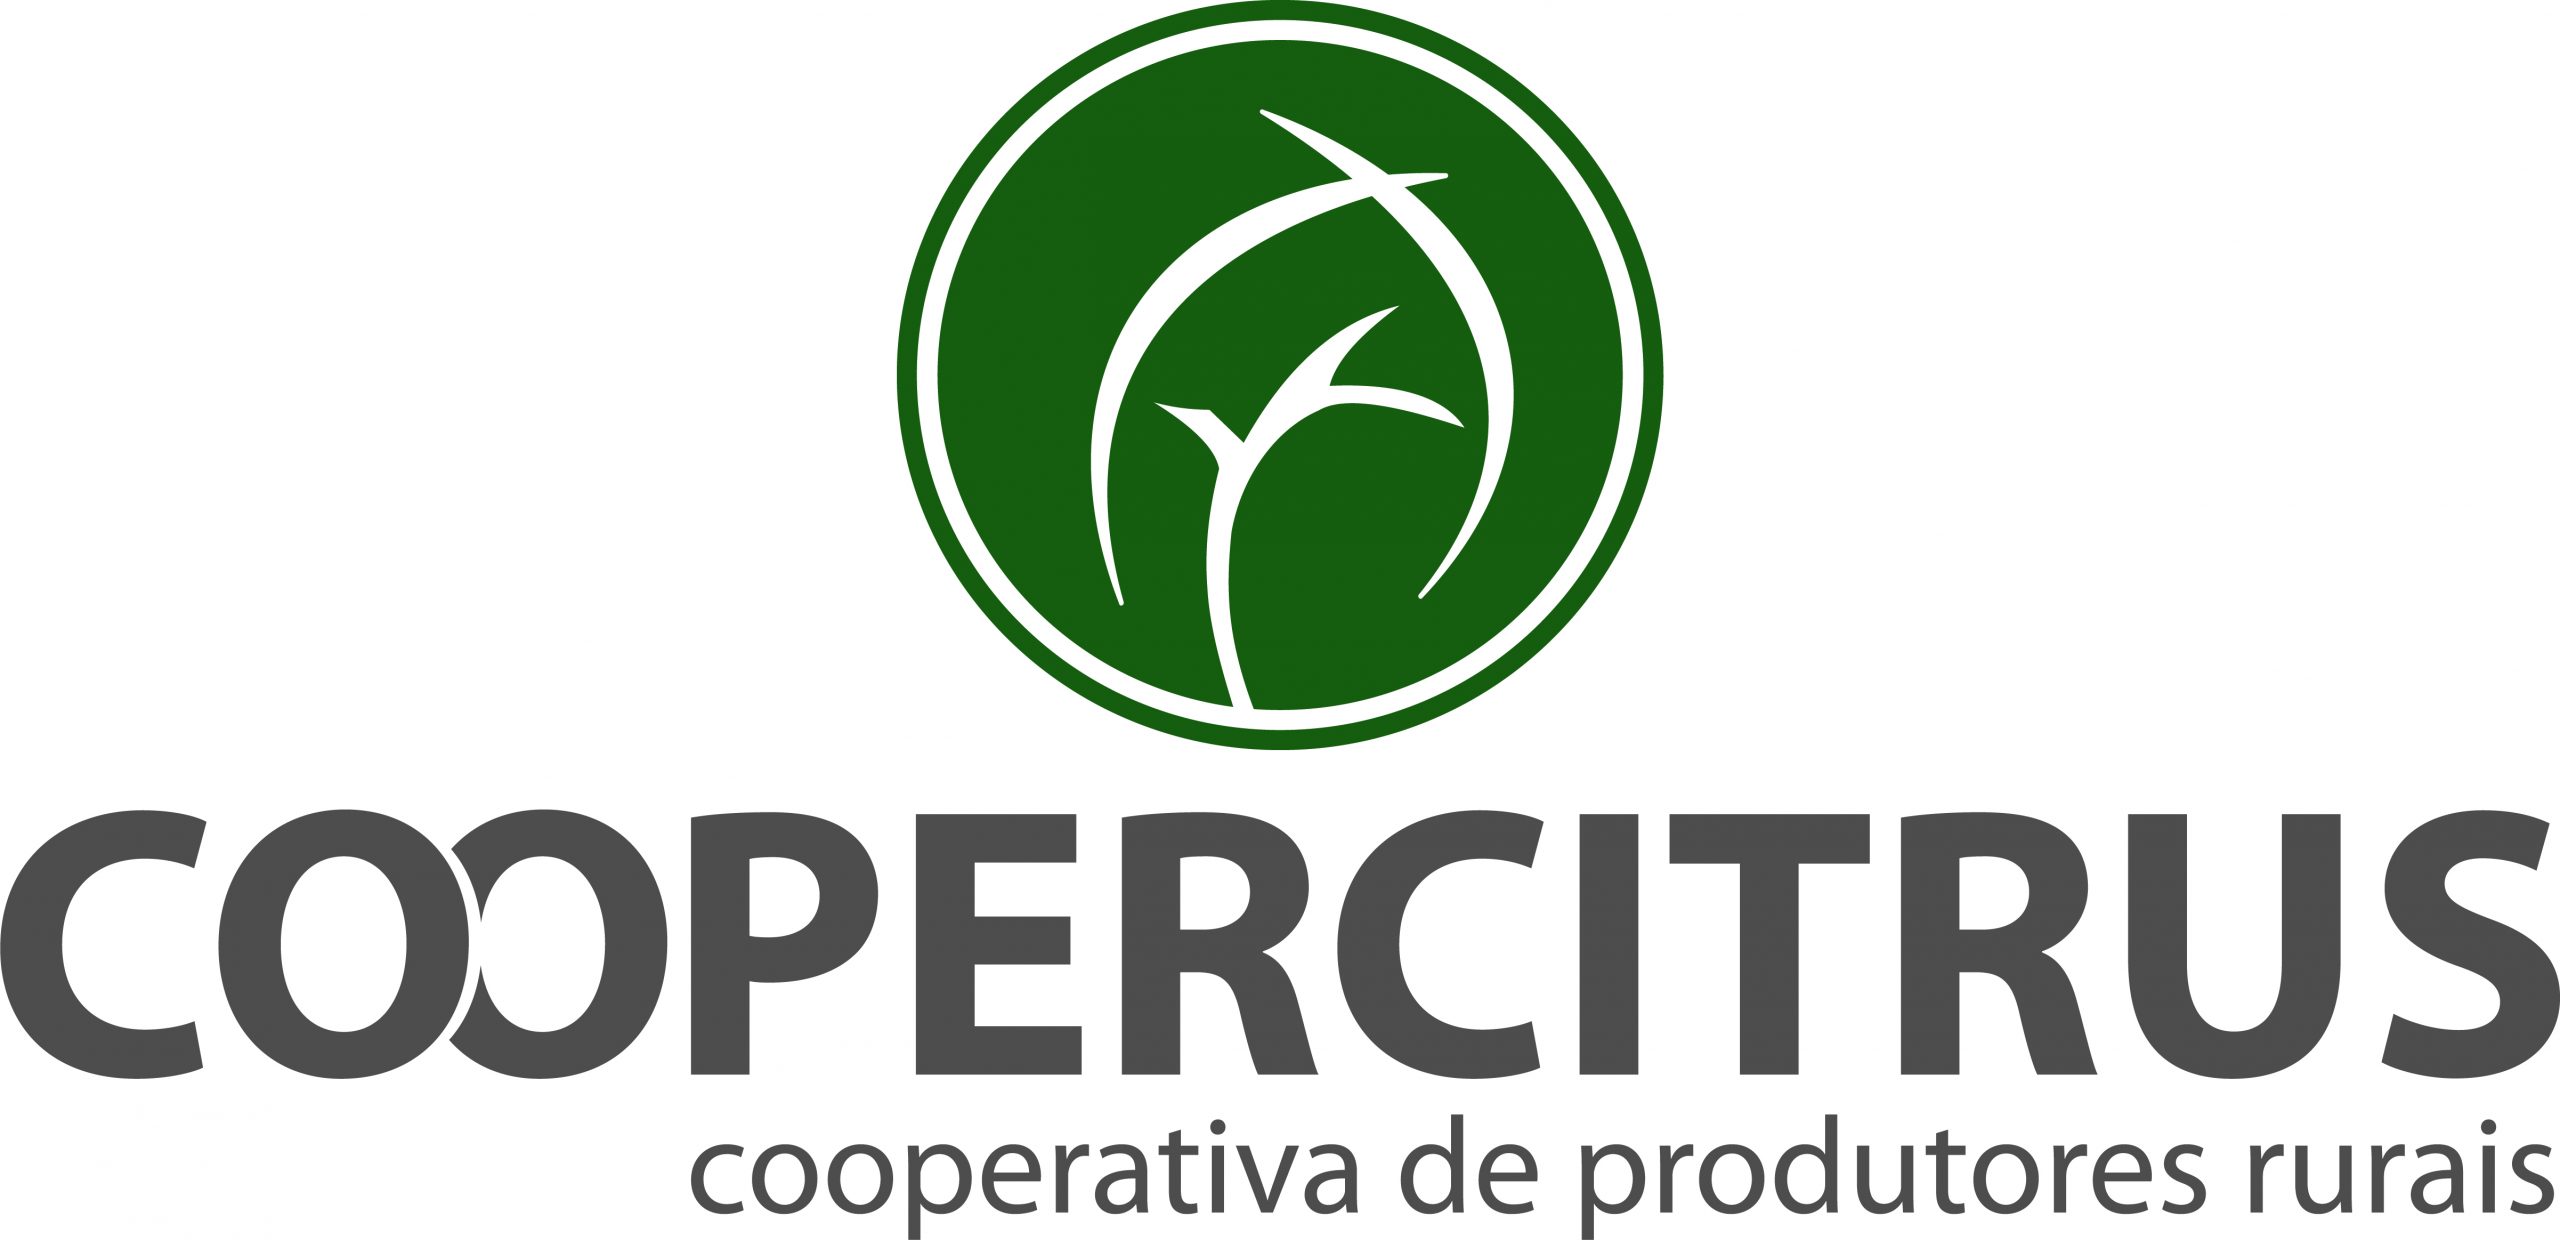 Coopercitrus inaugura nova Unidade de Negócios em Franca, SP